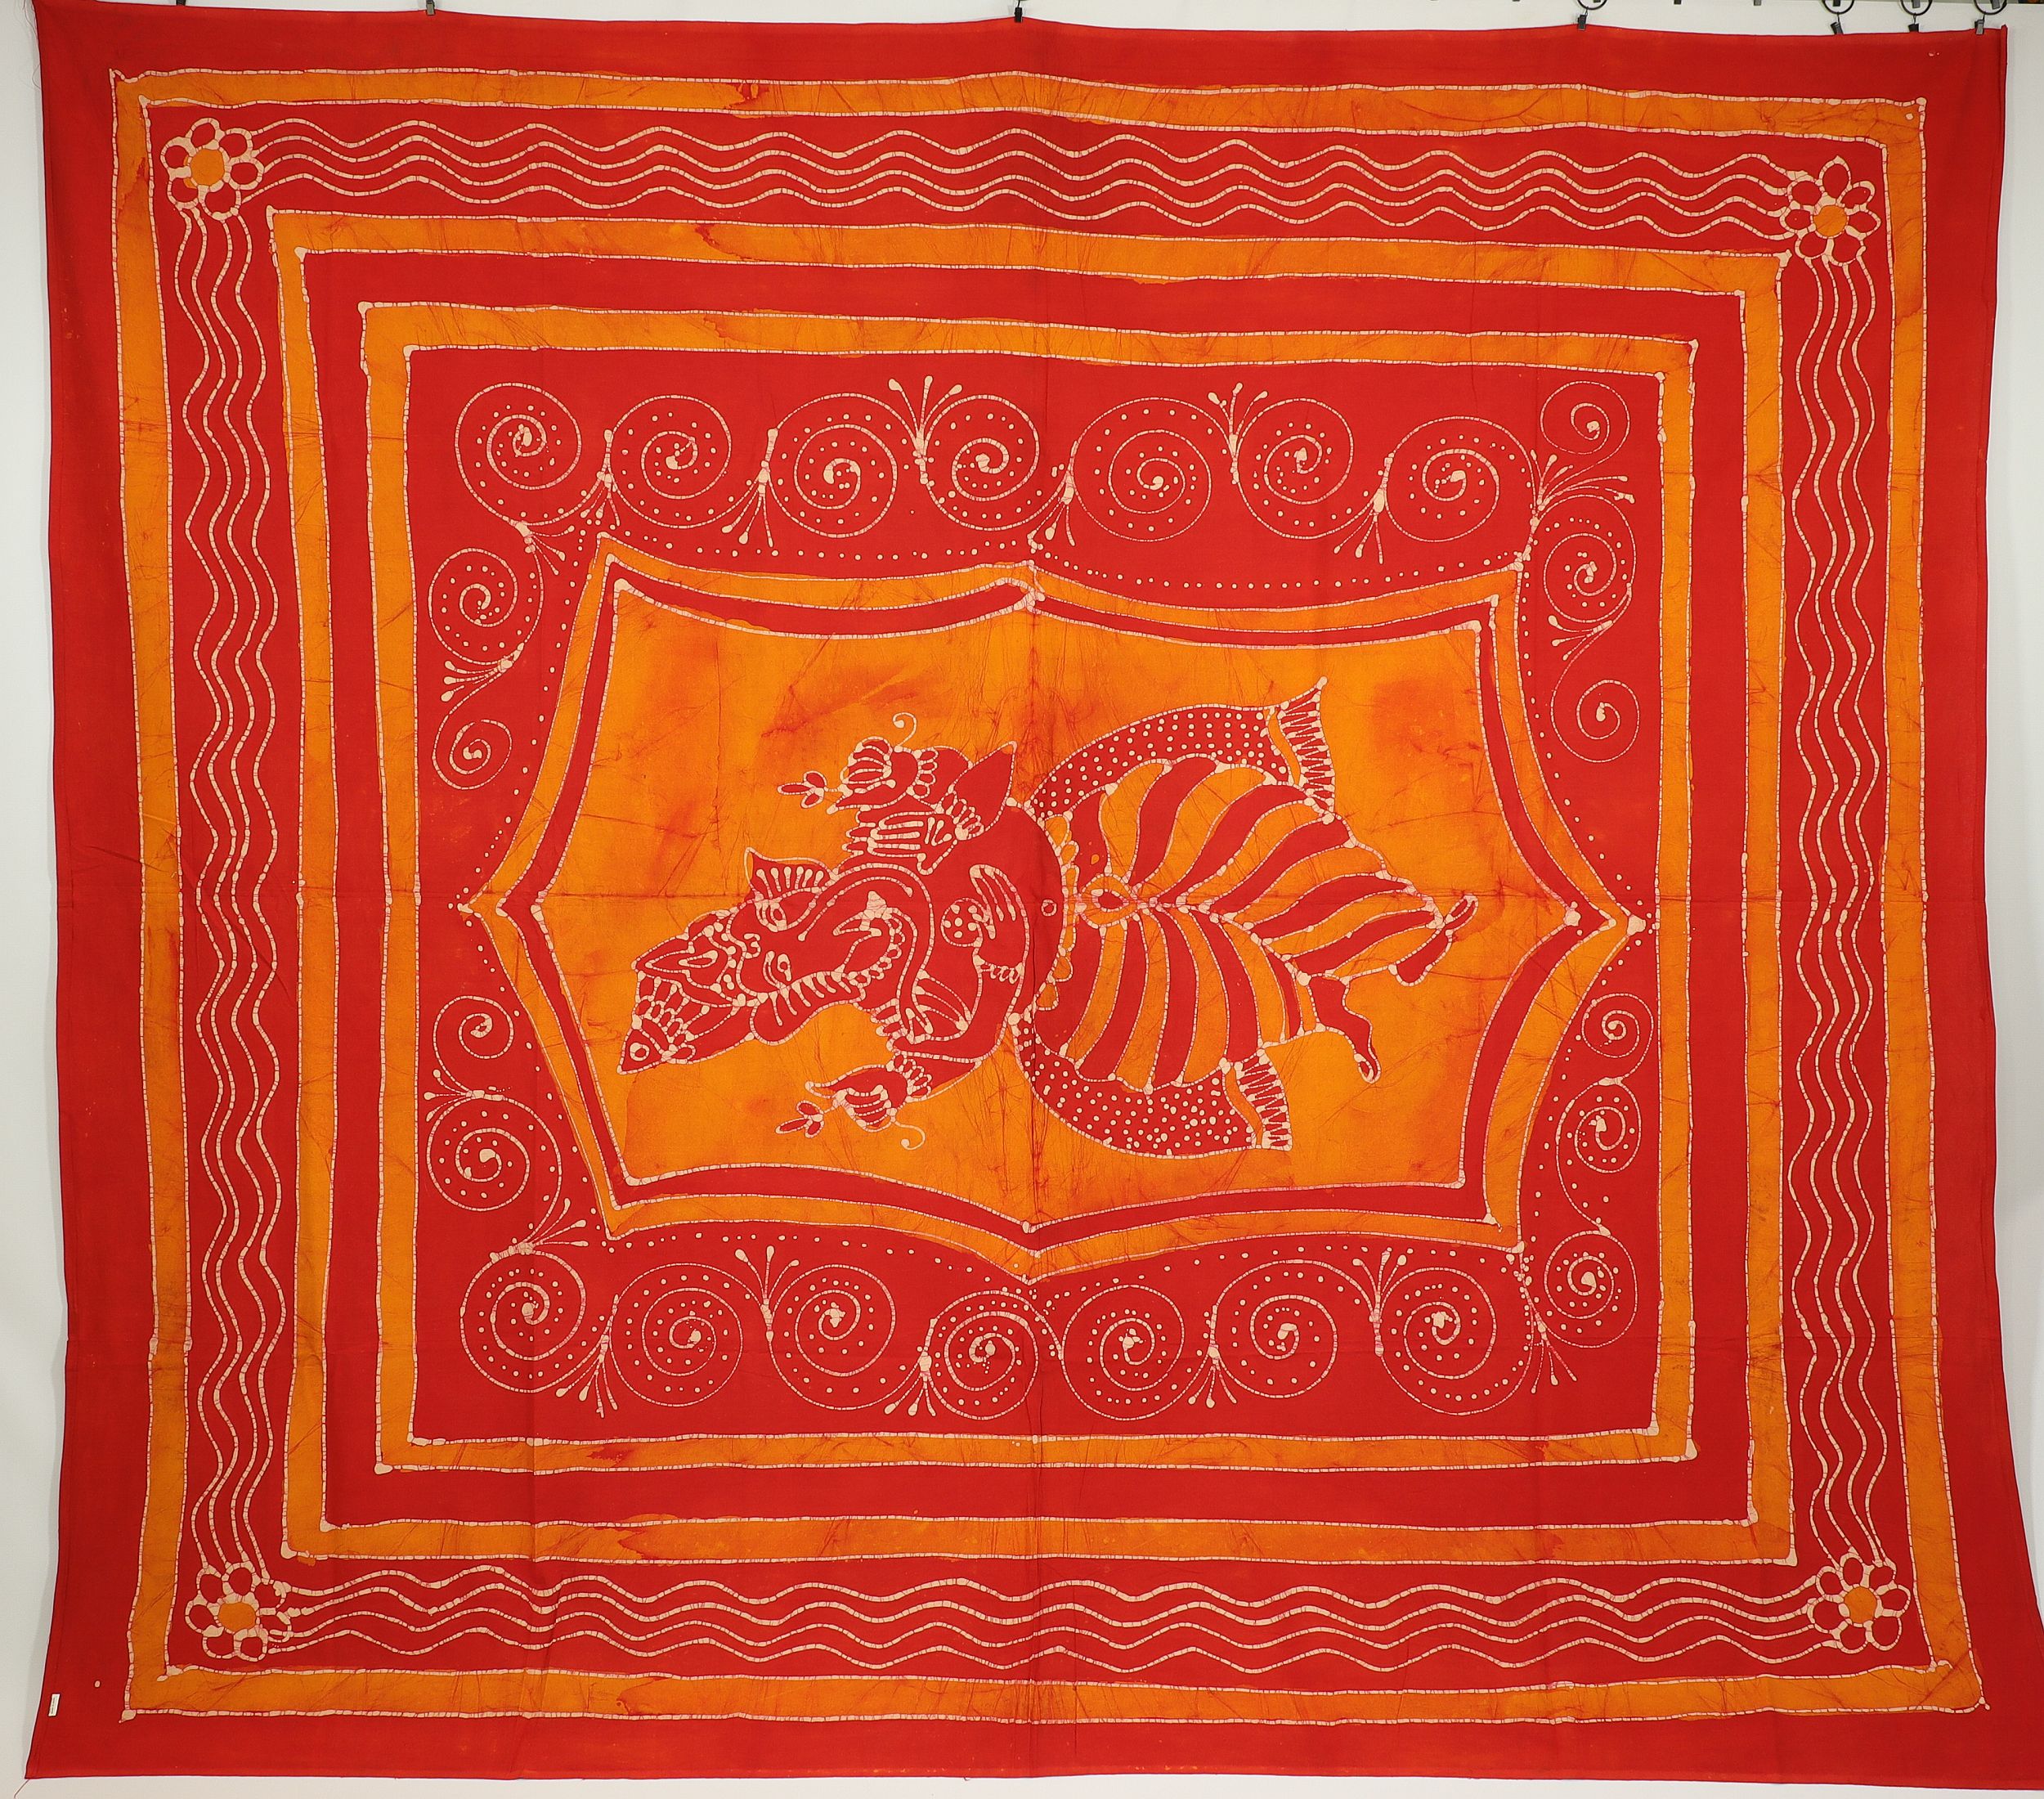 Wandtuch XXL 210x230 - Ganesha - 100% Baumwolle - detailreicher indischer Druck - mehrfarbig - dekoratives Tuch, Wandbild, Tagesdecke, Bedcover, Vorhang, Picknick-Decke, Strandtuch